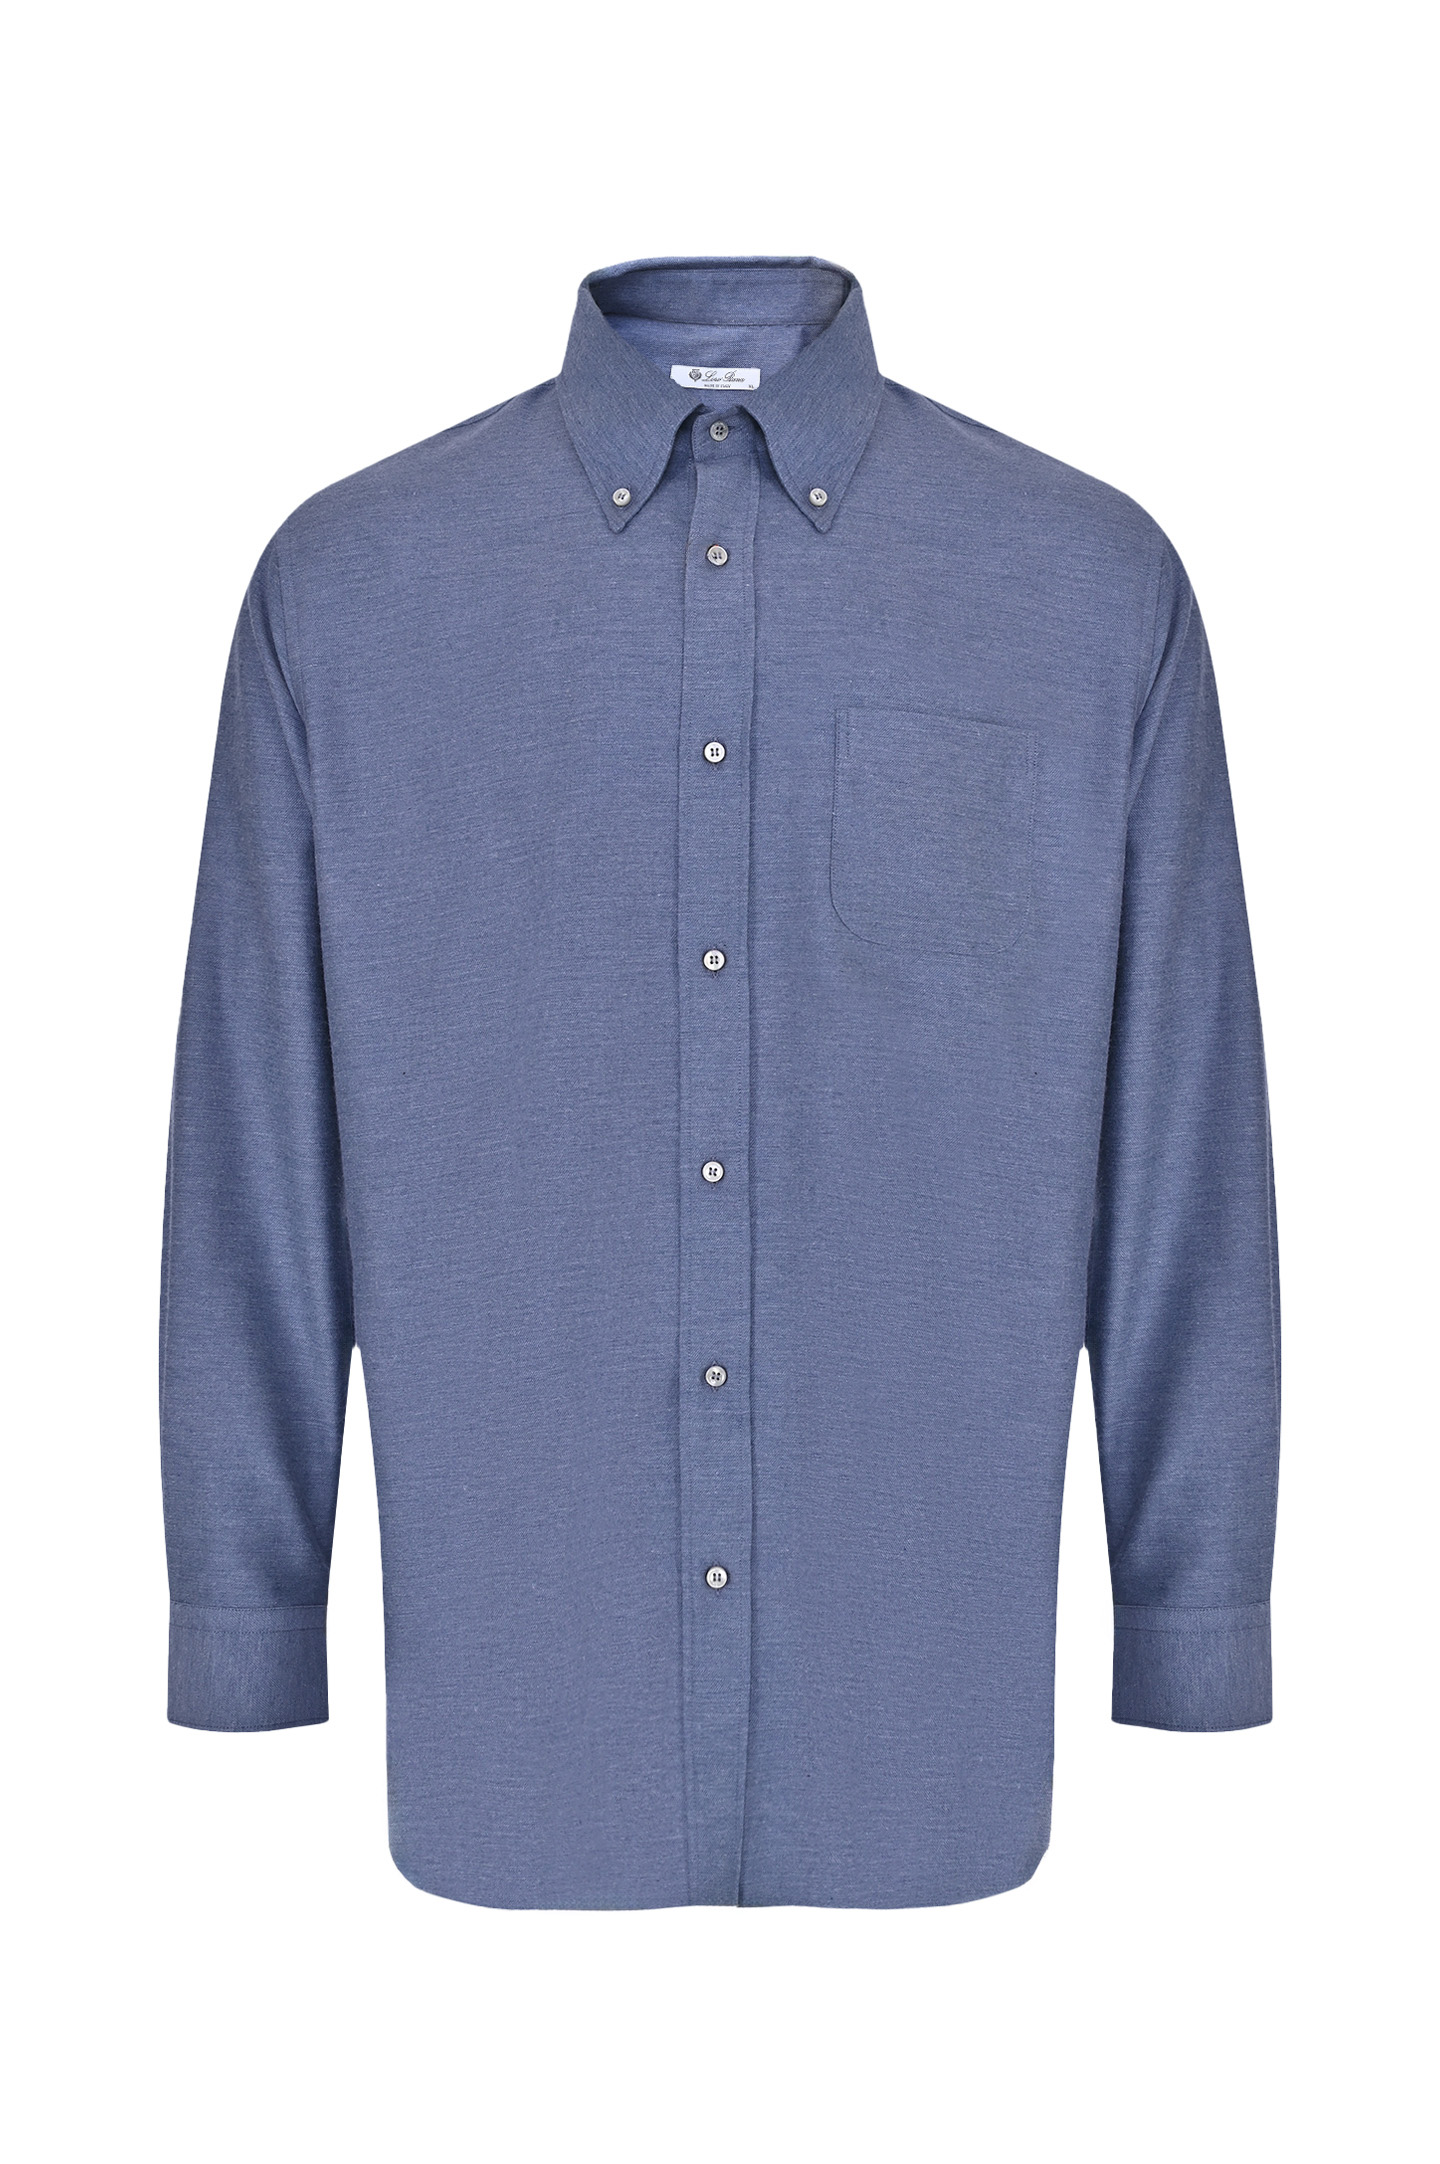 Рубашка из хлопка и кашемира LORO PIANA FAO0362 , цвет: Голубой, Мужской